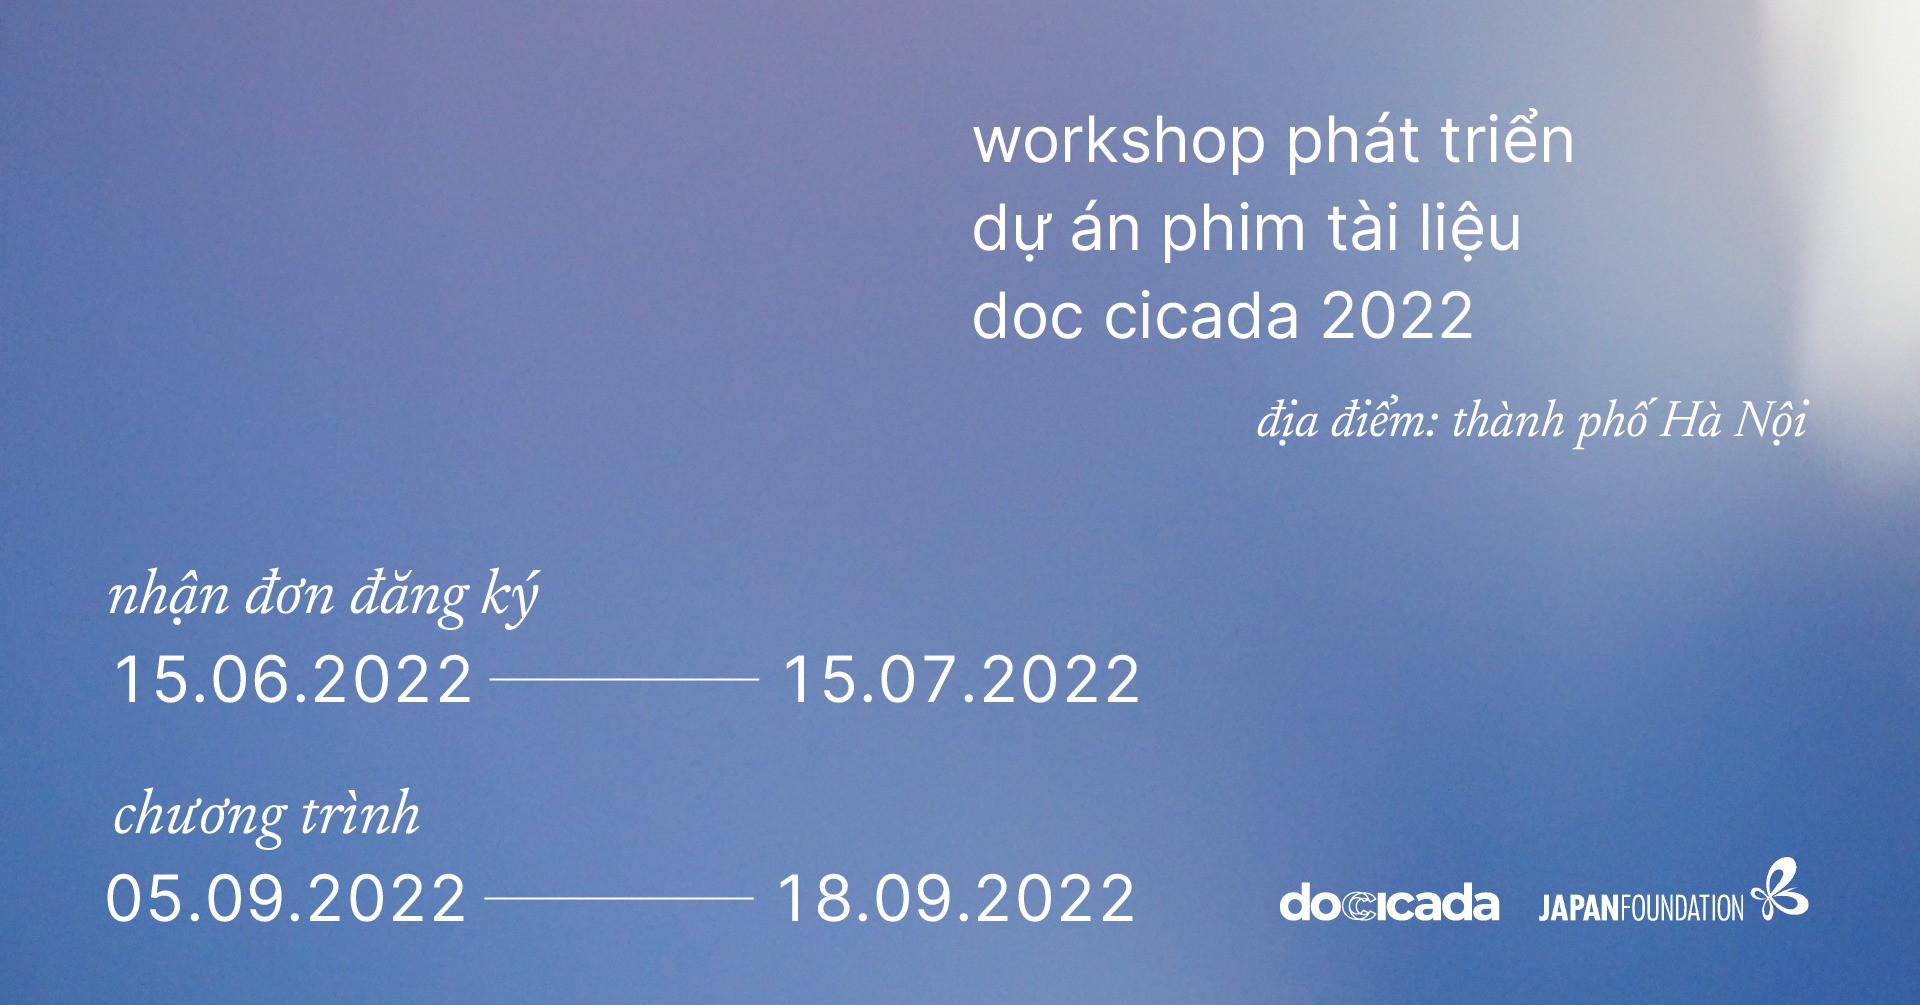 Workshop Phát triển dự án phim tài liệu DOC CICADA 2022